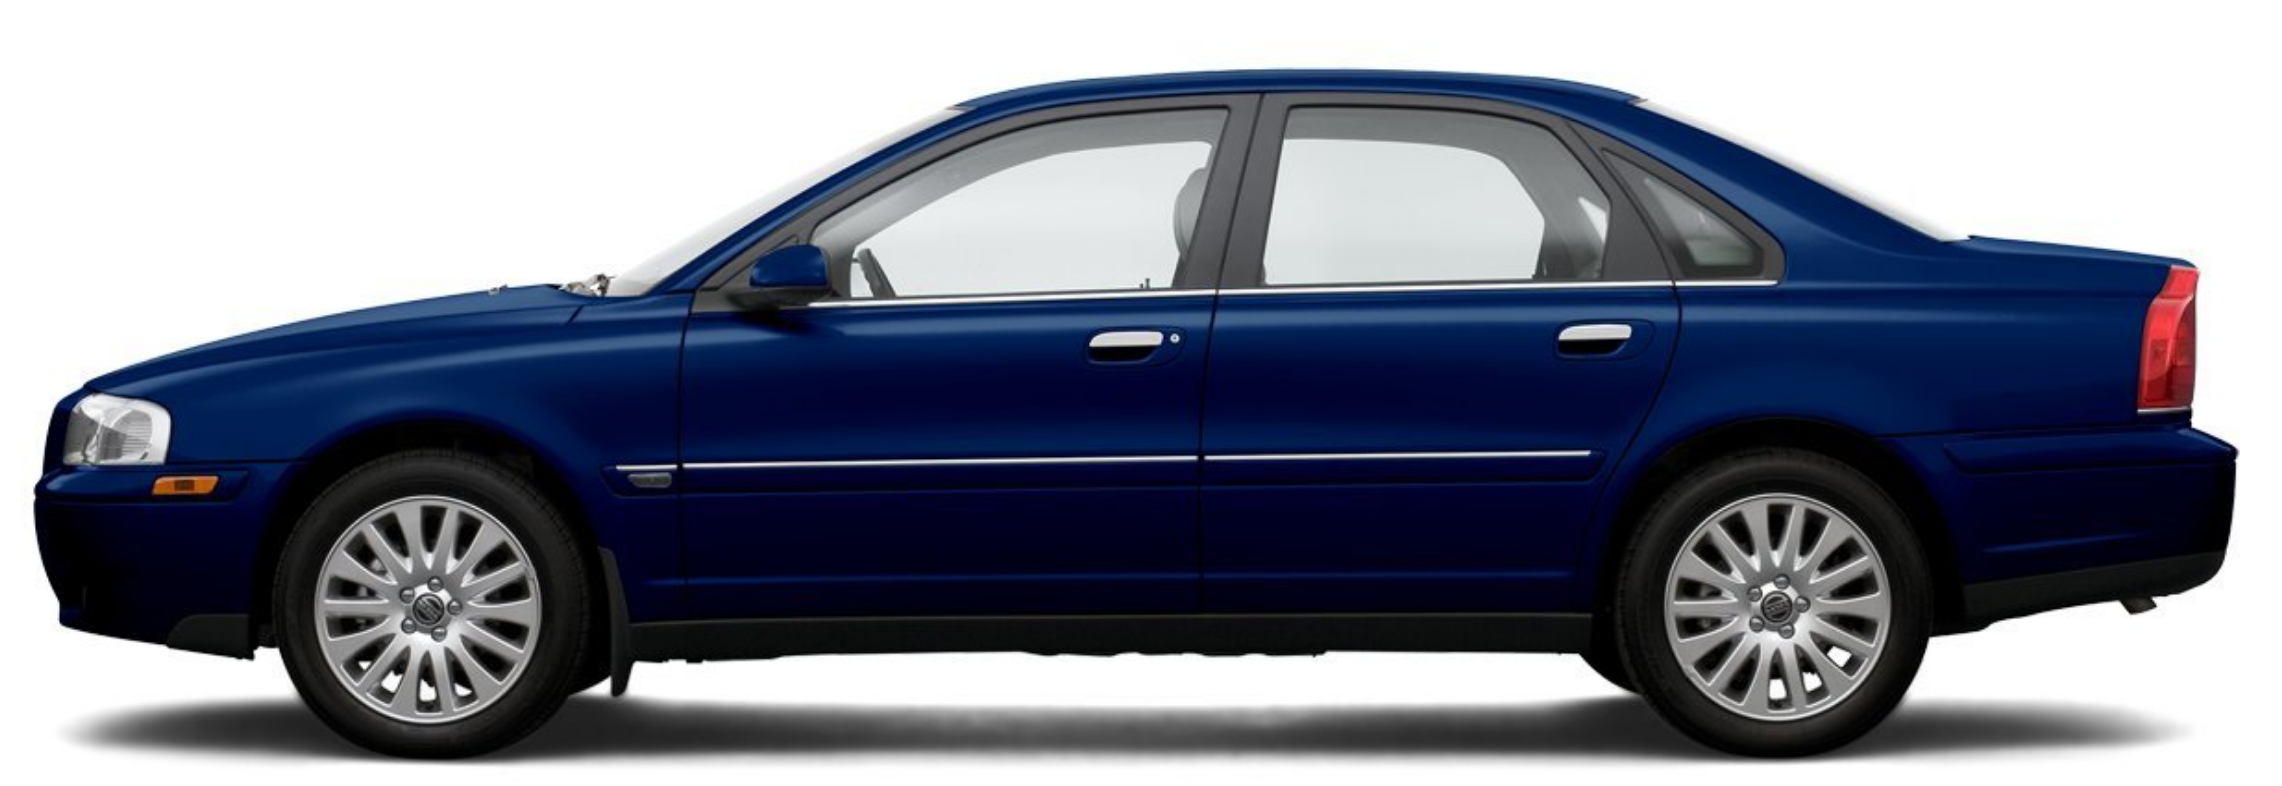 Afbeelding van 99GXPH, blauwe Volvo S80 sedan